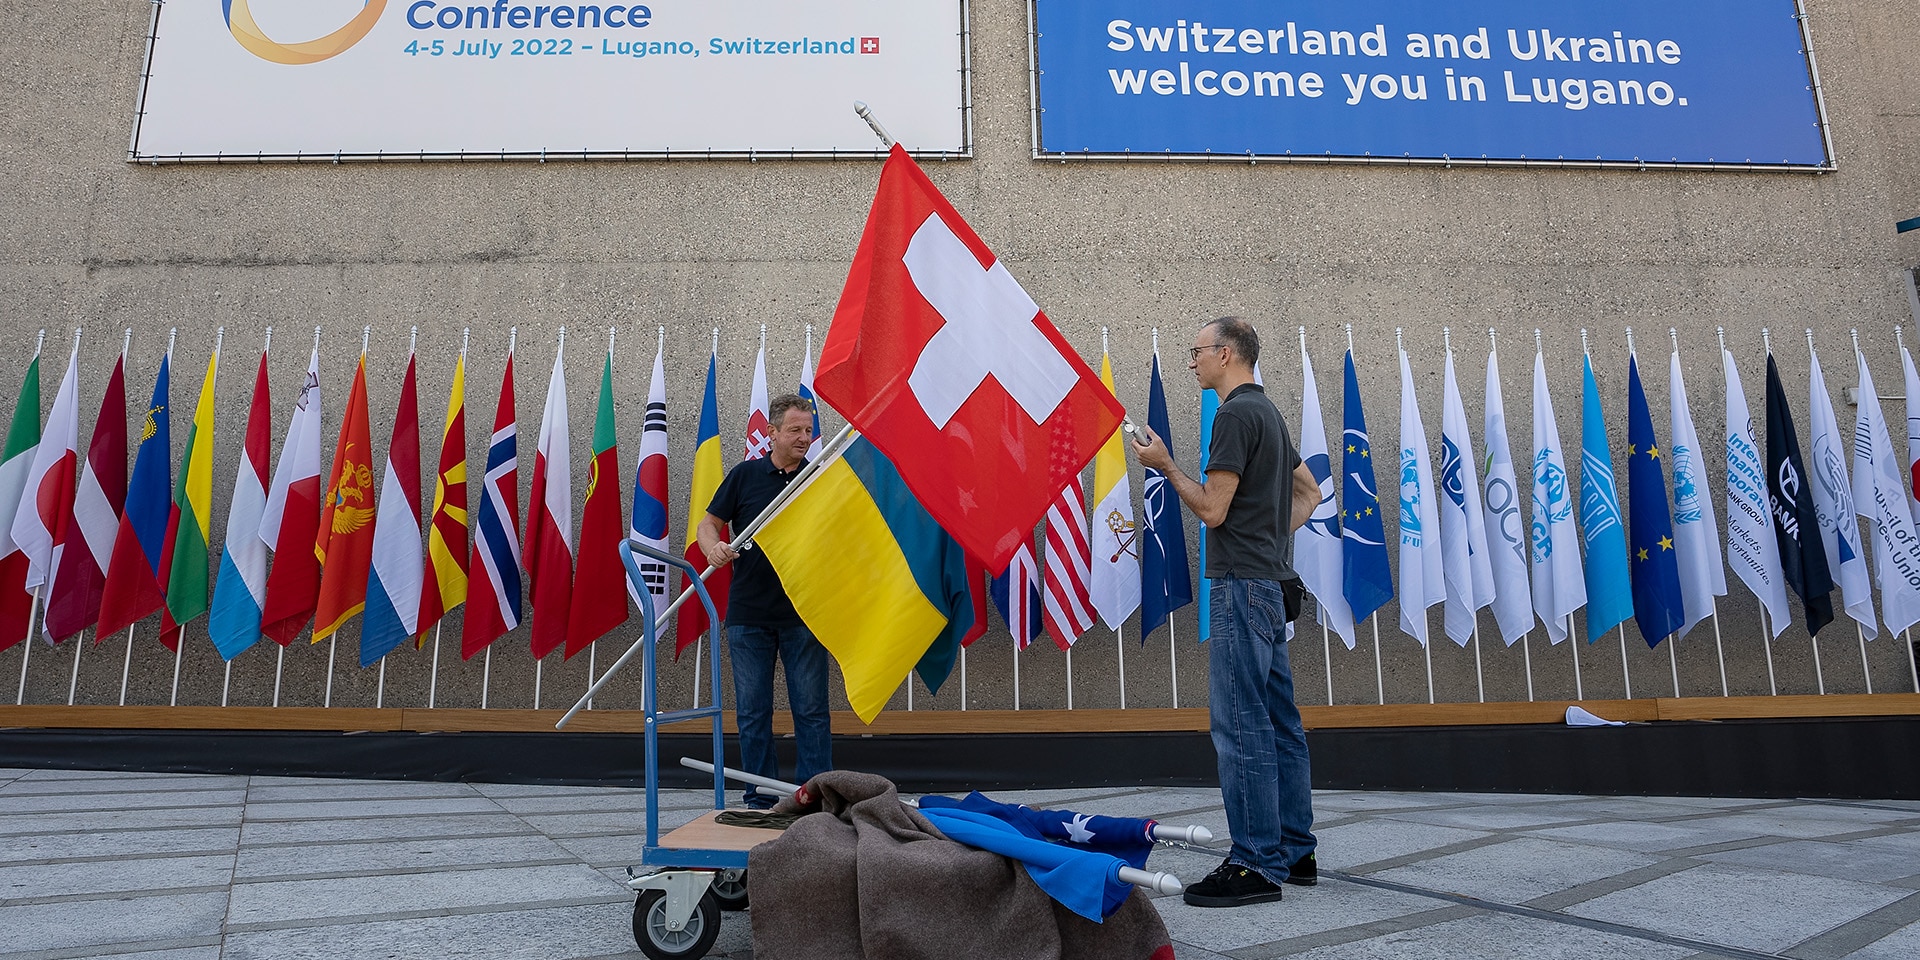 Al Palazzo dei Congressi vengono esposte le bandiere della Svizzera e dell'Ucraina.